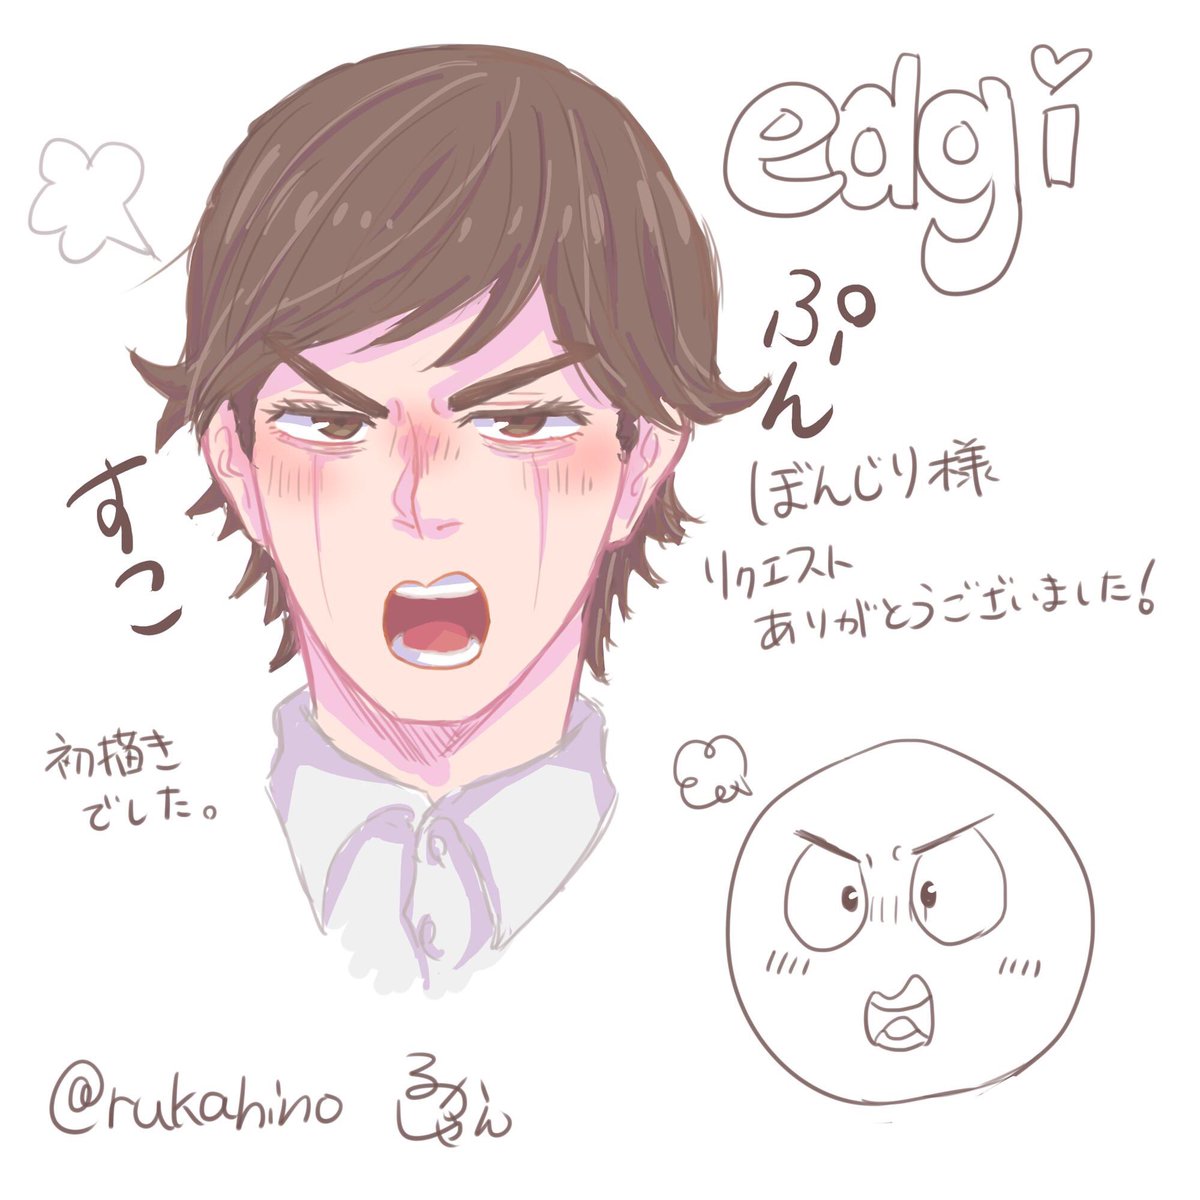 リプで送られてきた絵文字の表情で描く
(@bonjiri_jyuwaaa )ぼんじり様
G3で edgiくん 